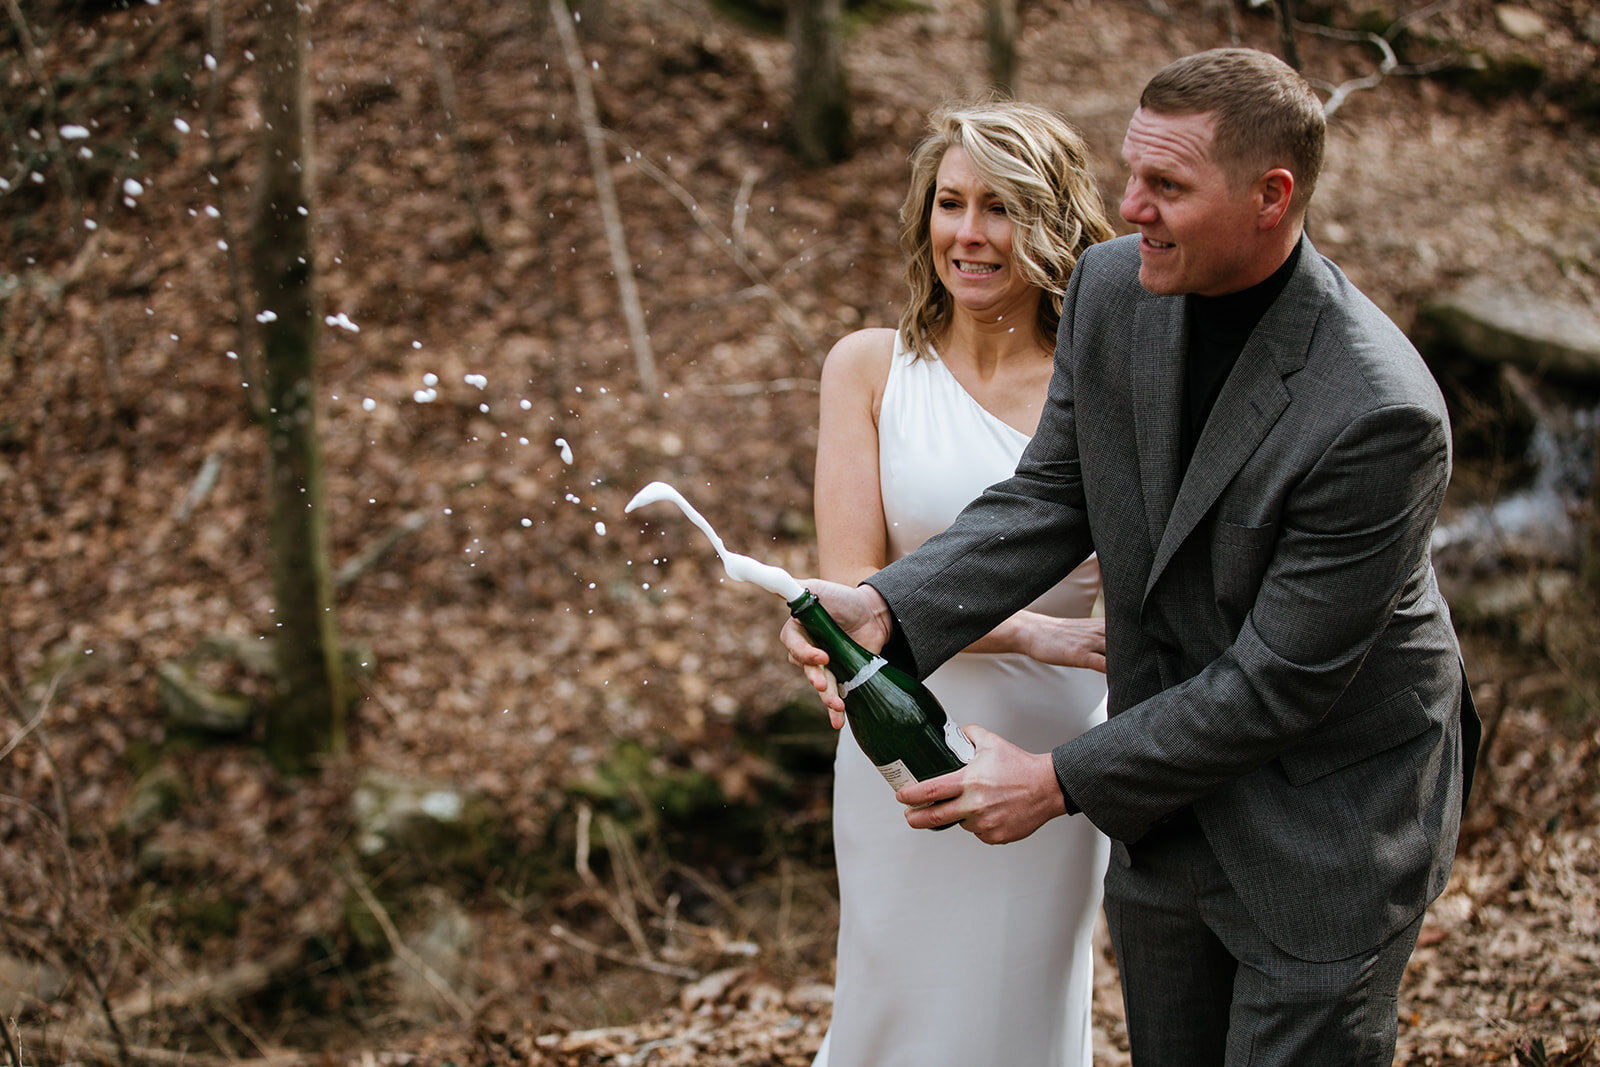 snoopers-rock-adventure-elopement-chattanooga-wedding-photographerfoster-falls-elopement-chattanooga-wedding-photographer-570_websize.jpg